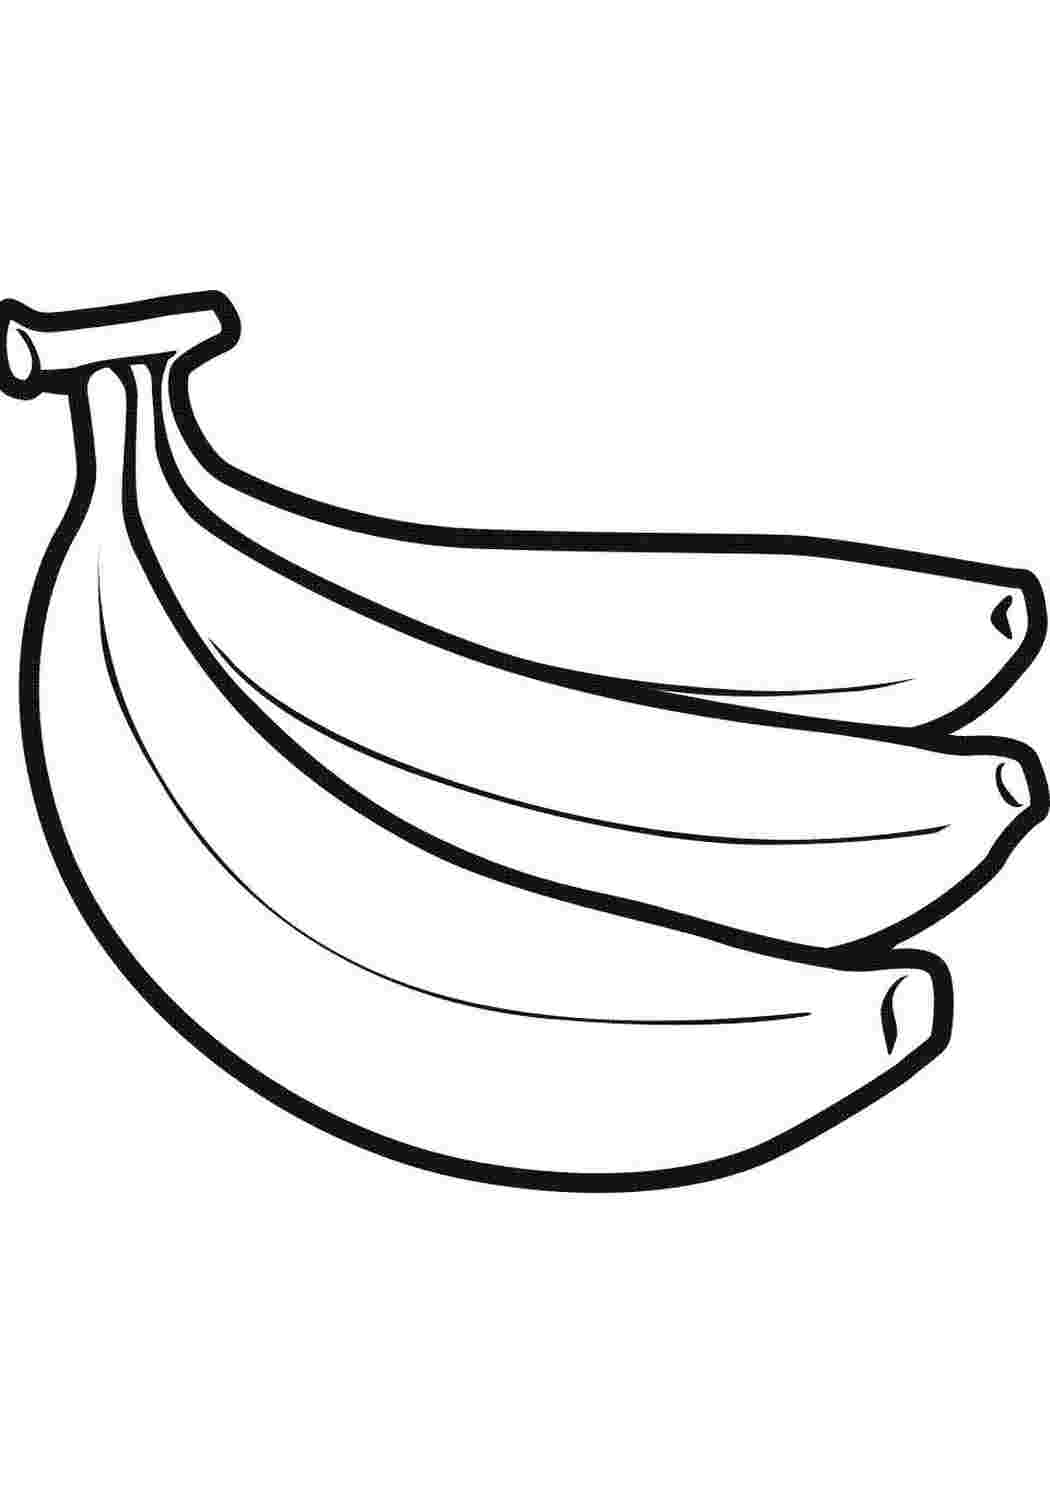 Стоковые фотографии Банан Связка премиум-класса